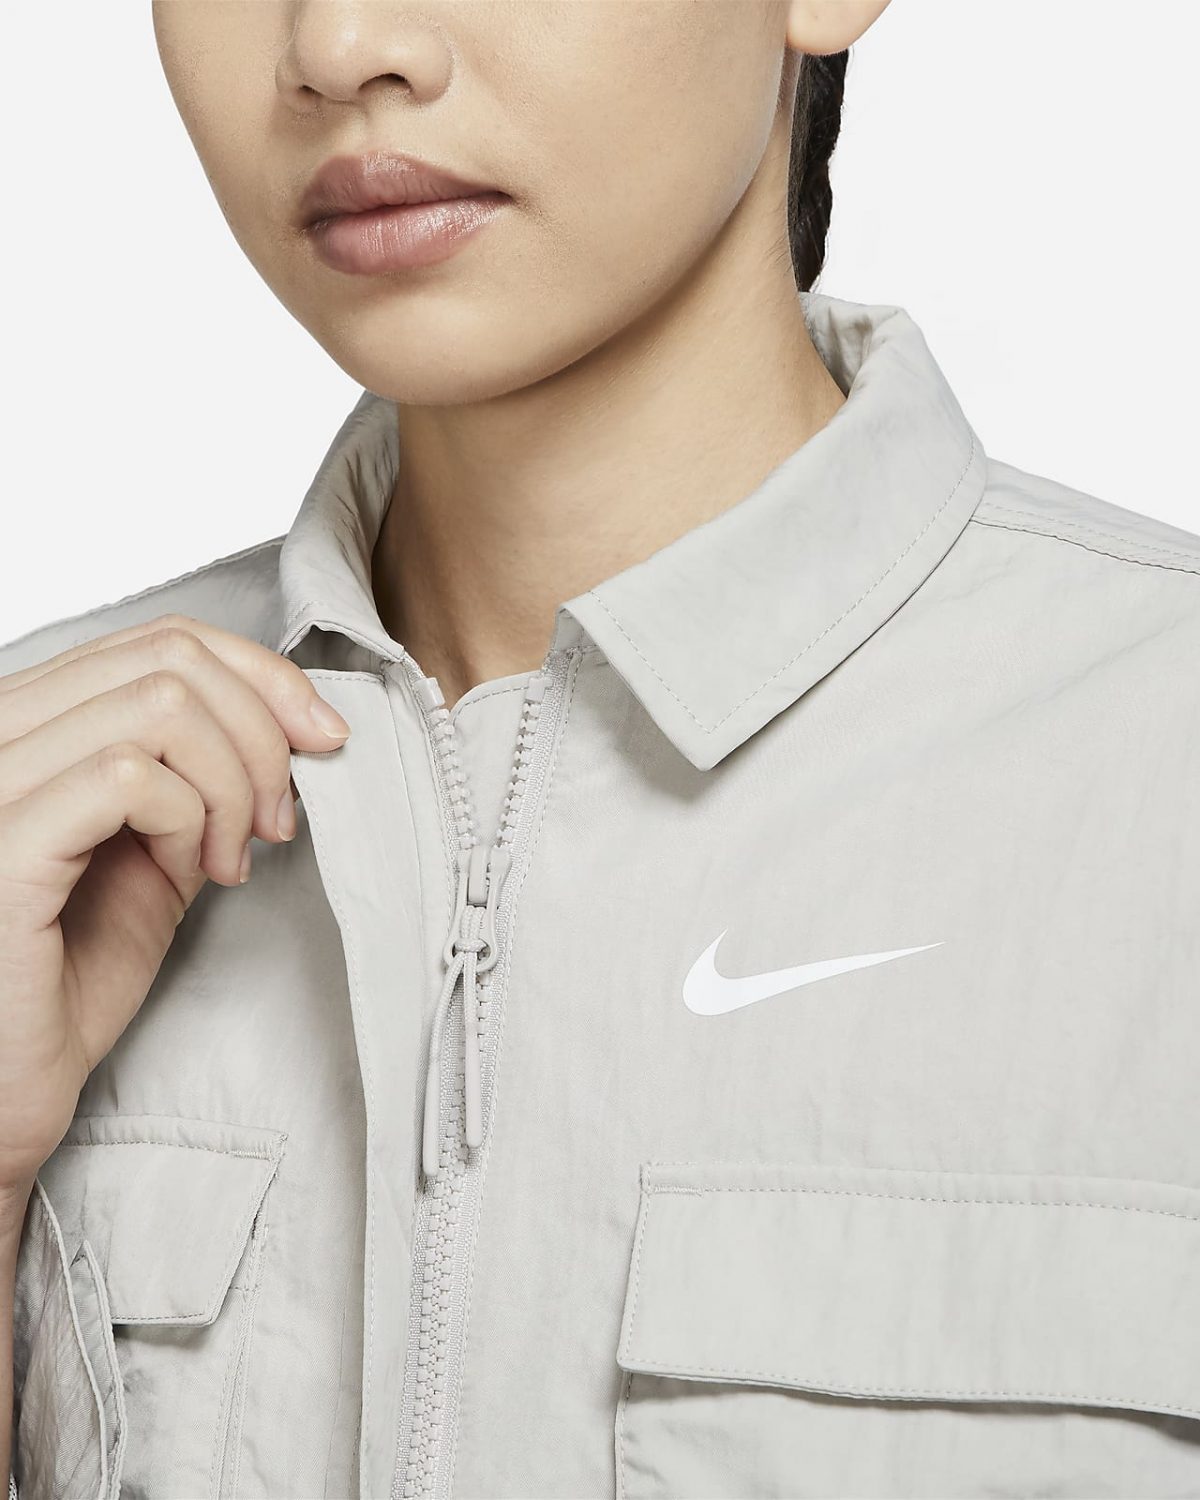 Женская куртка Nike Sportswear Essential